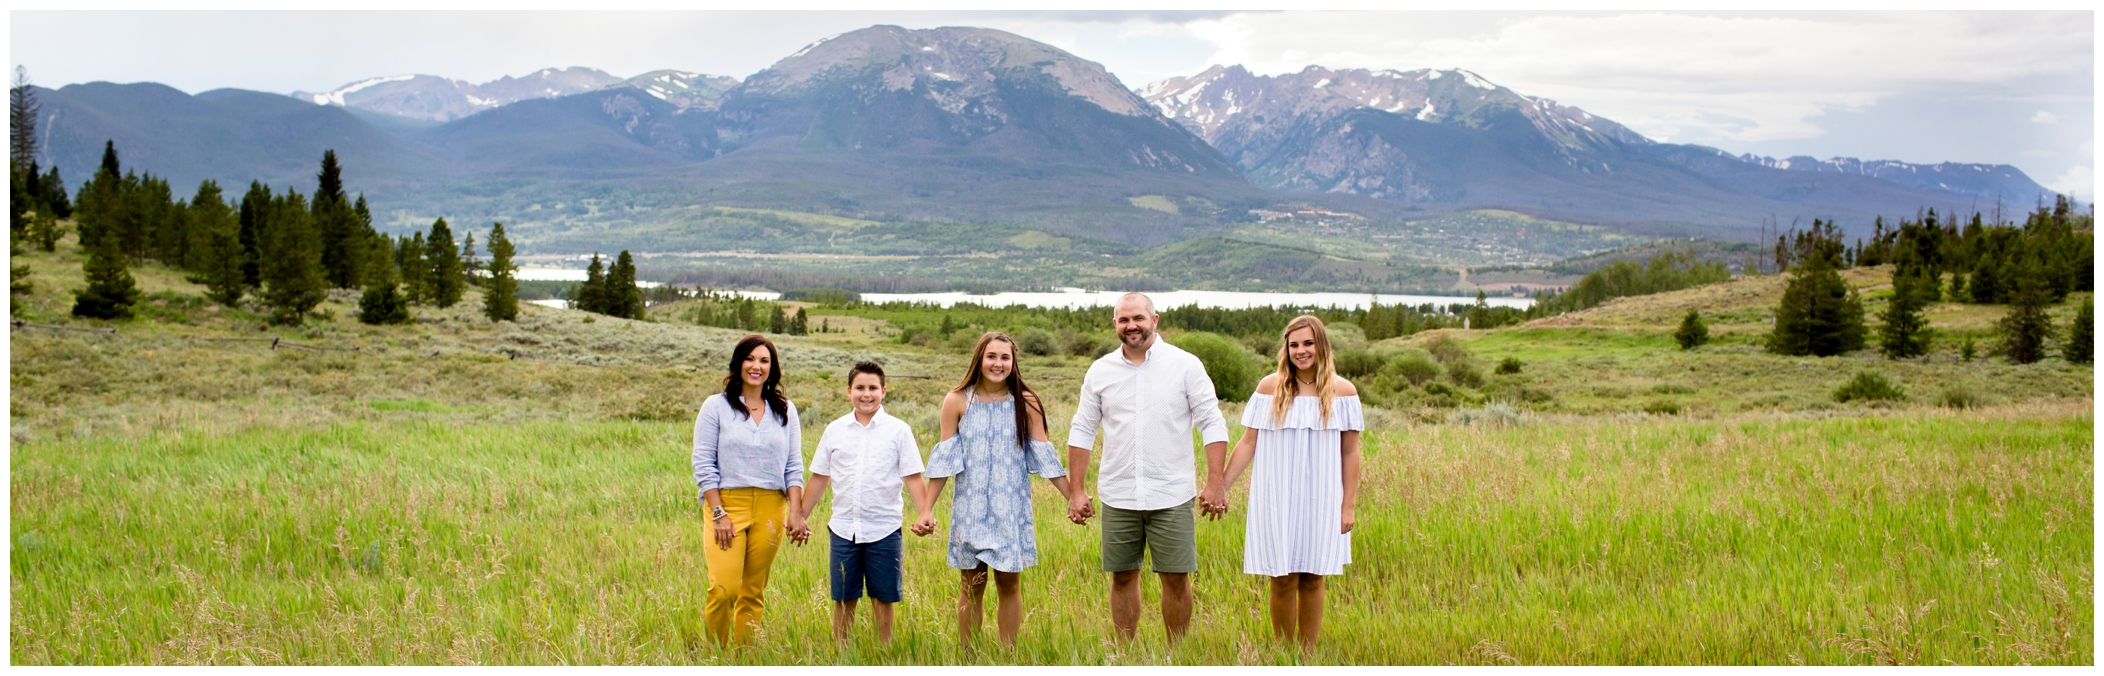 Colorado mountain family photos in Dillon CO